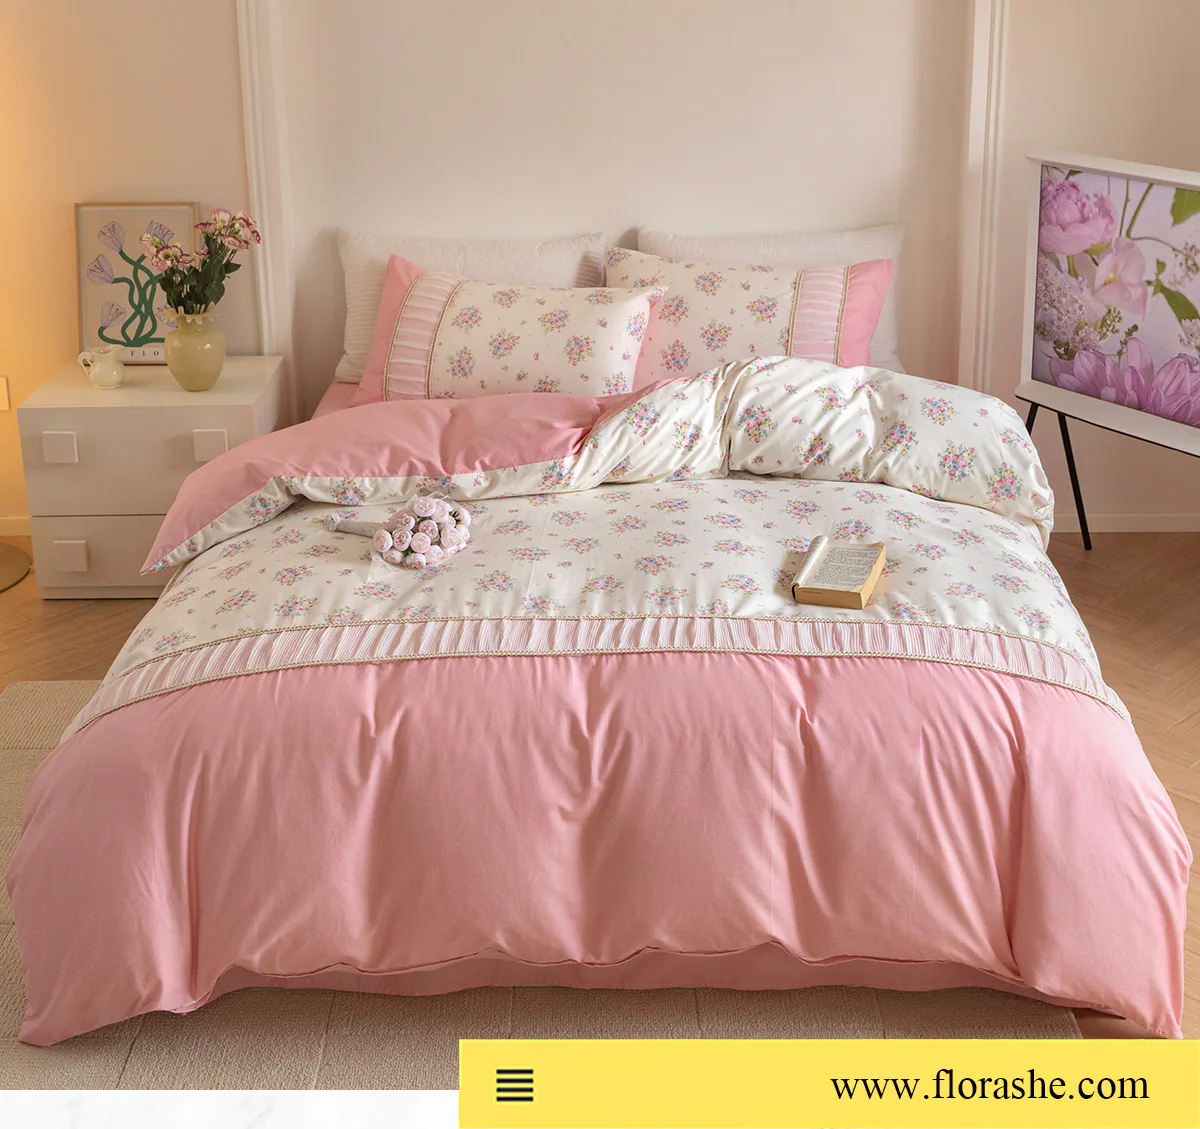 Retro-Princess-Style-100-Cotton-Floral-Duvet-Cover-Bedding-Set30